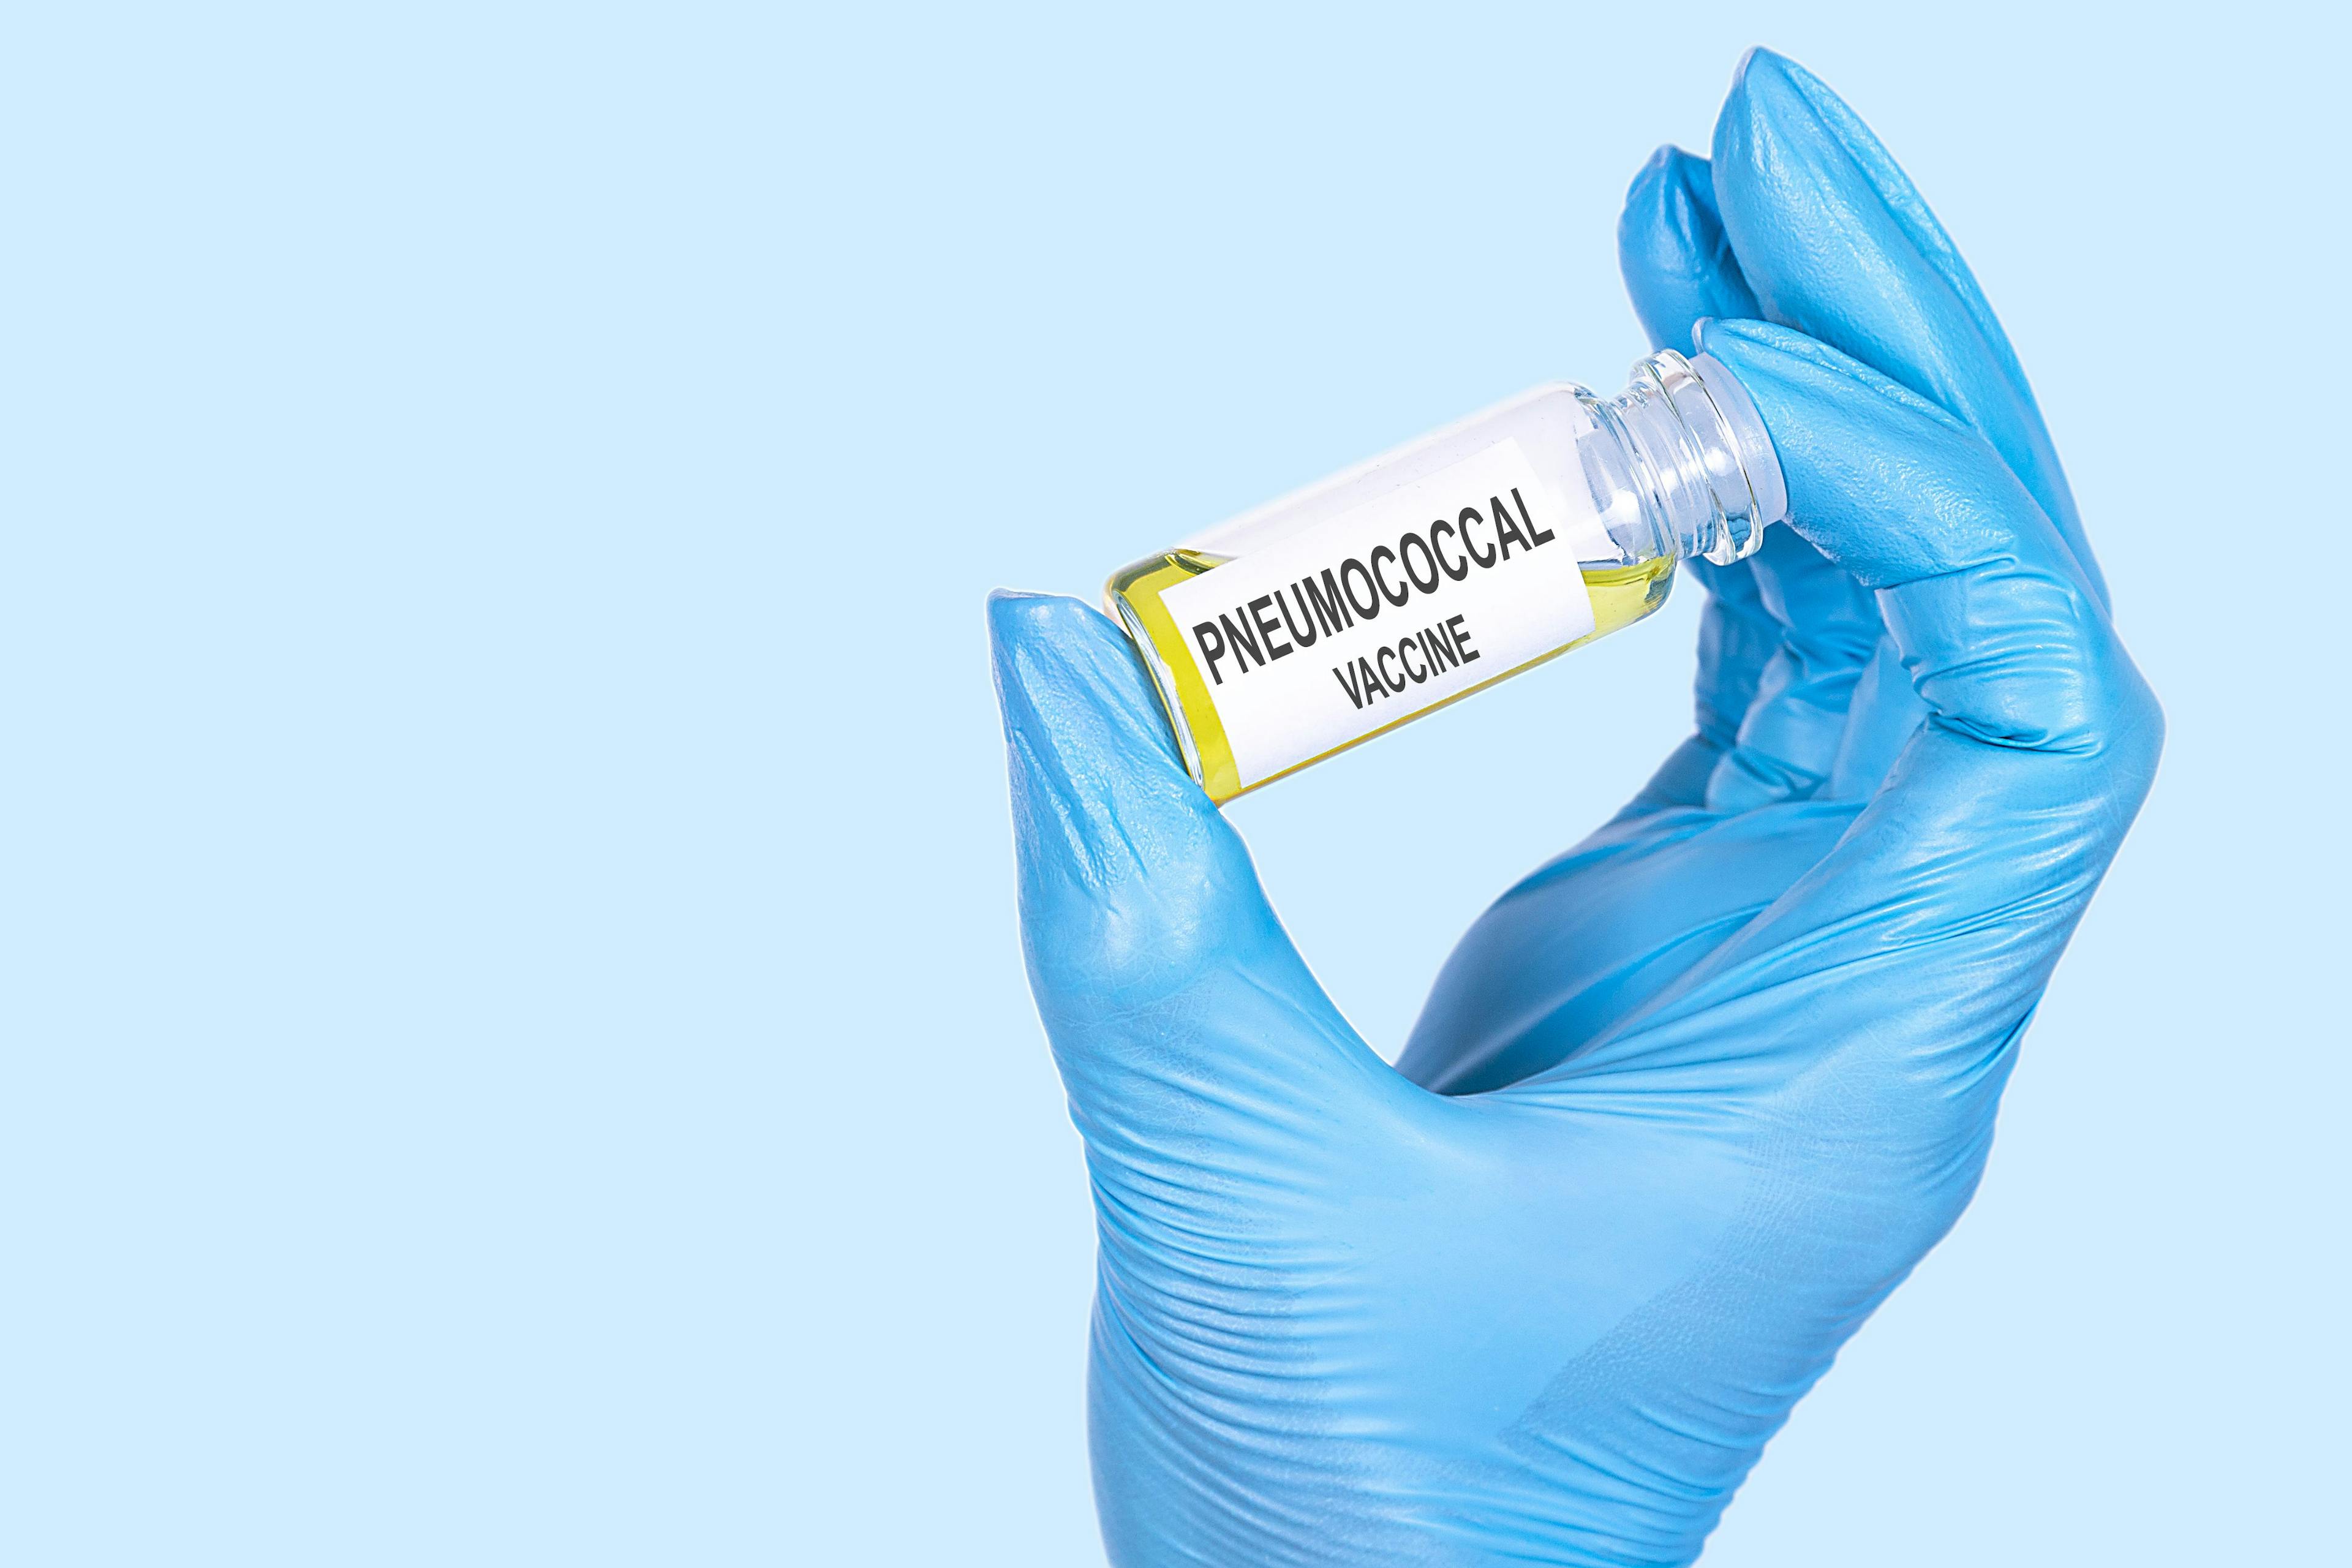 Pneumococcal vaccine | Image Credit: Iryna - stock.adobe.com